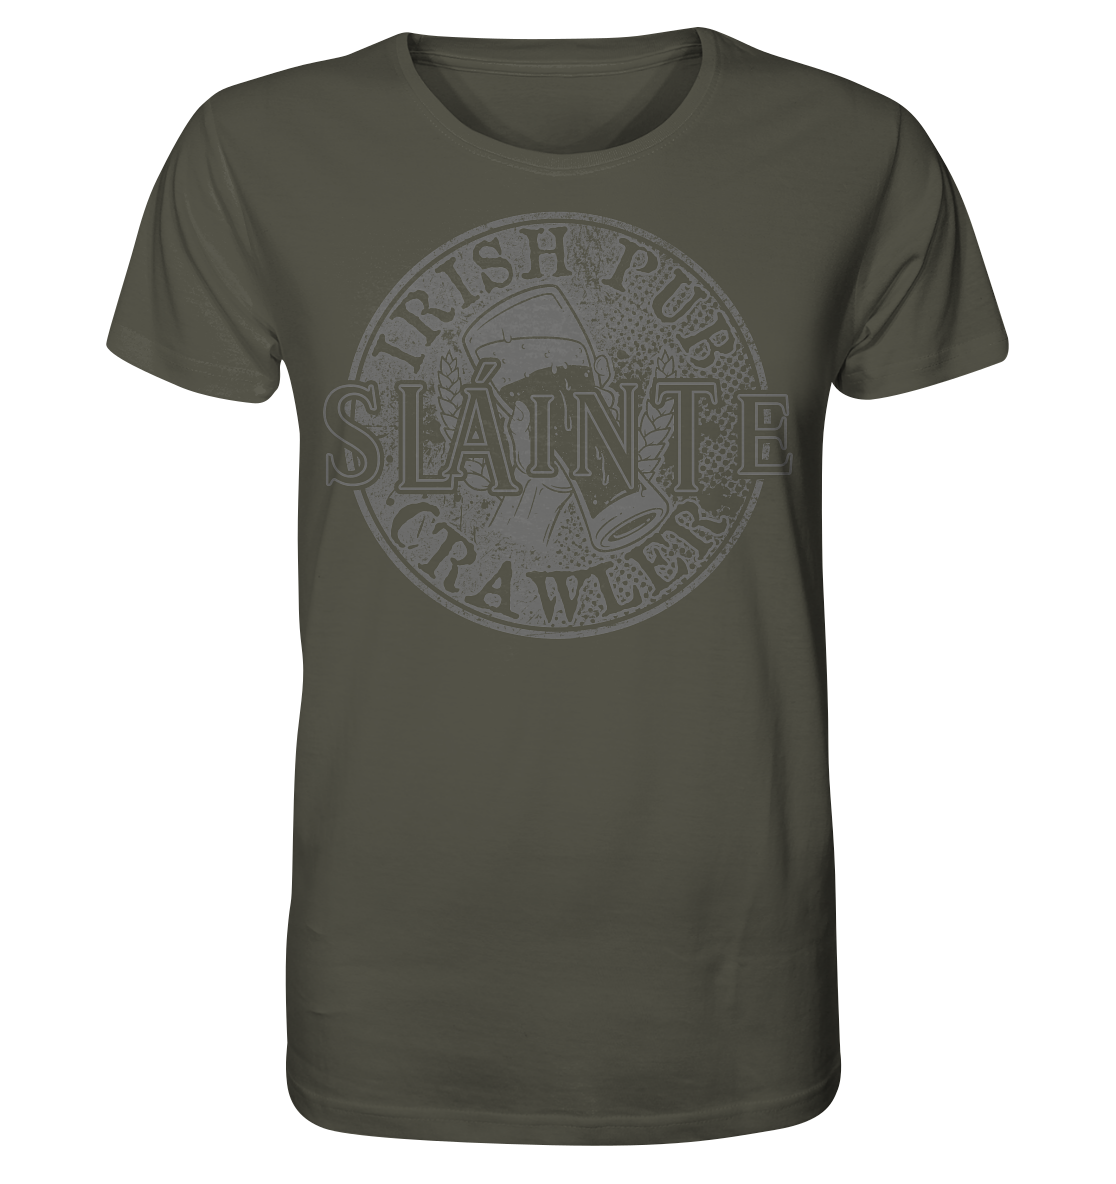 Sláinte "Irish Pub Crawler" - Organic Shirt